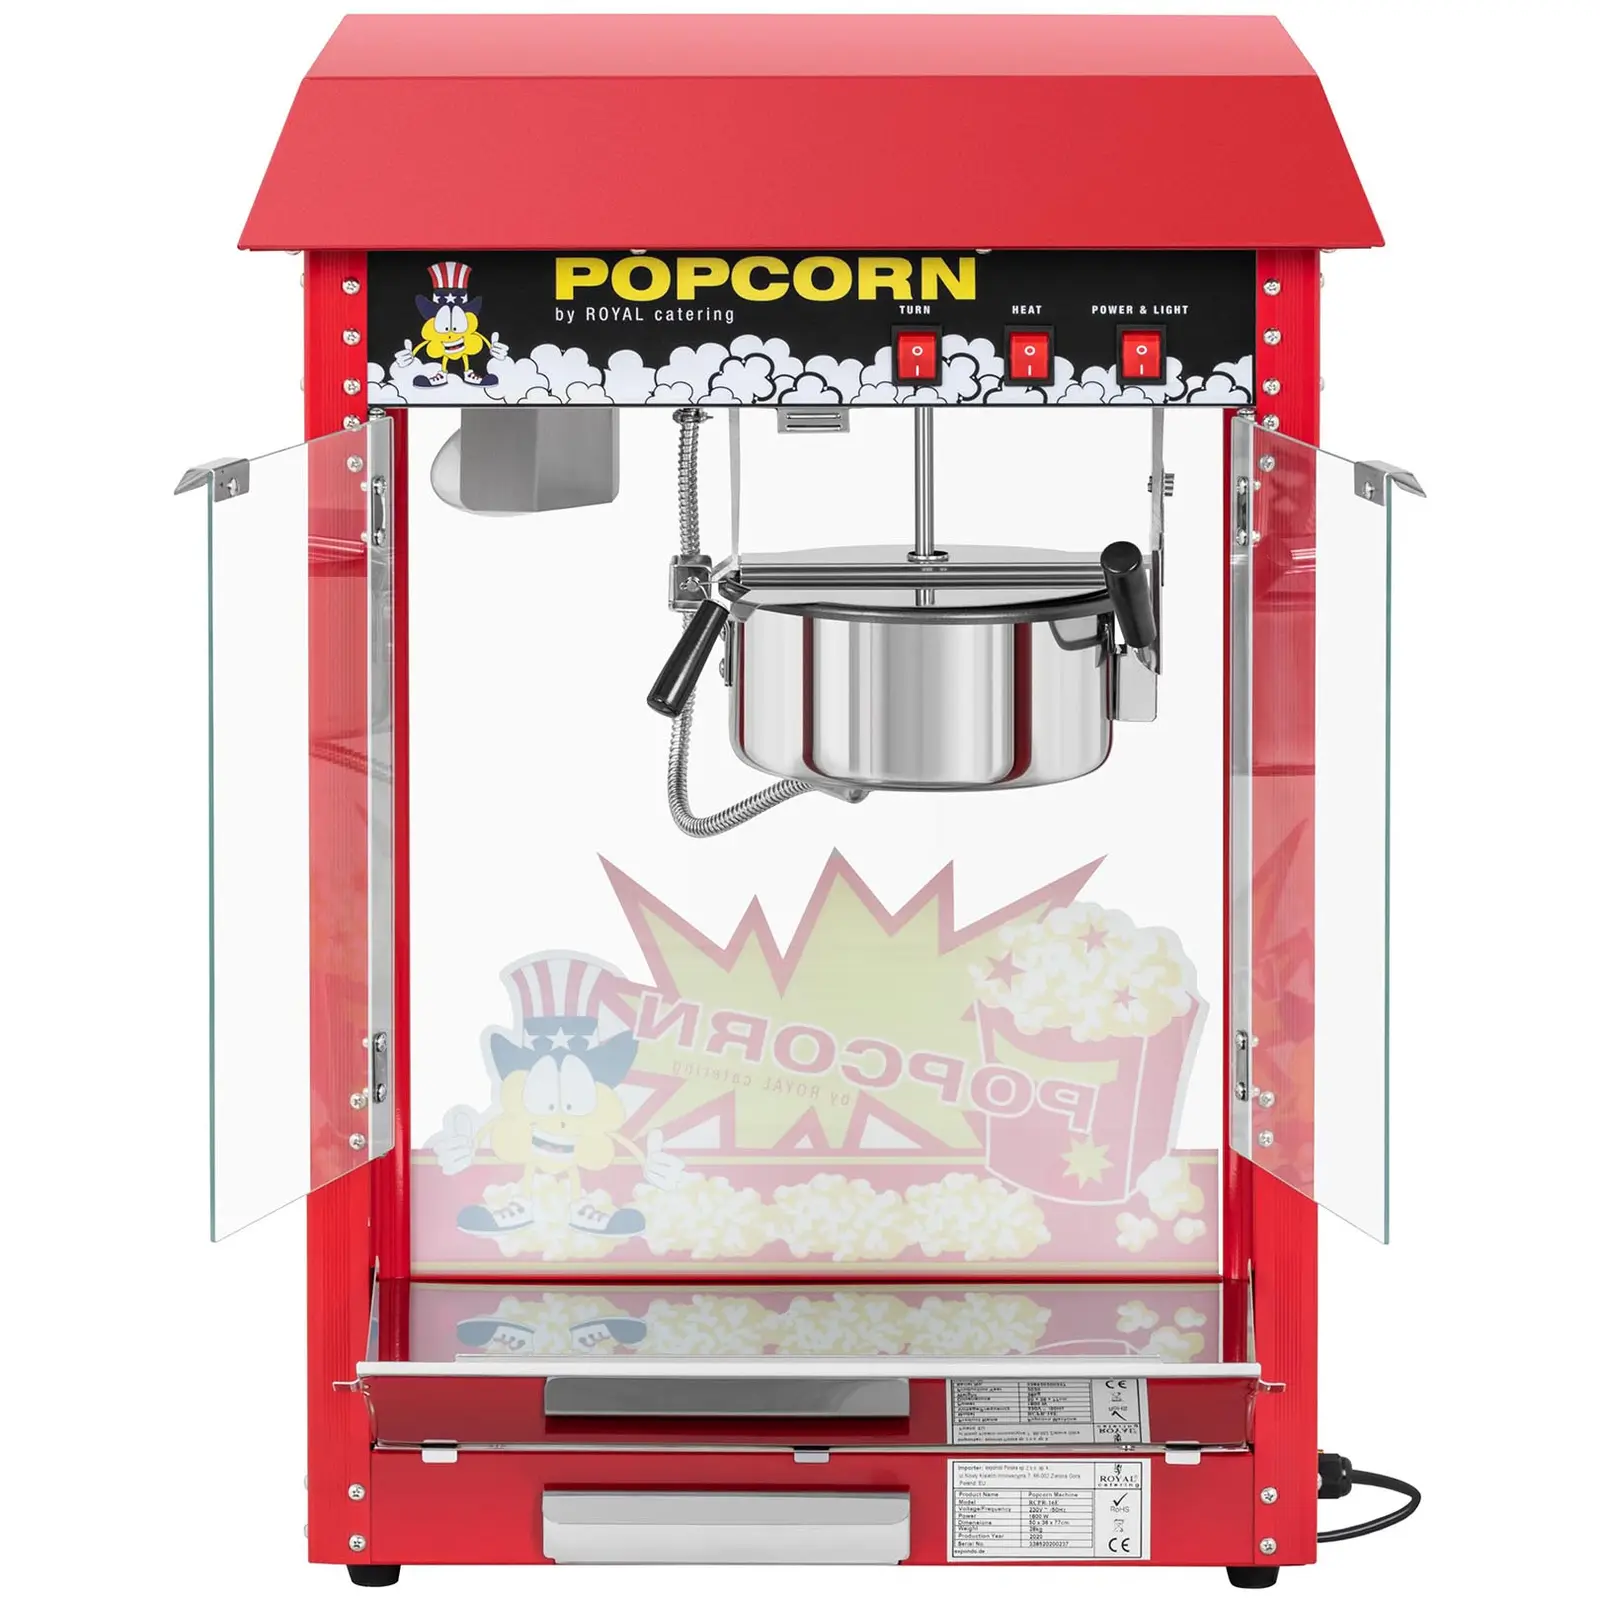 Kleine Popcornmaschine - 1600W Leistung, Edelstahl, gehärtetes Glas und Teflonmaterial 